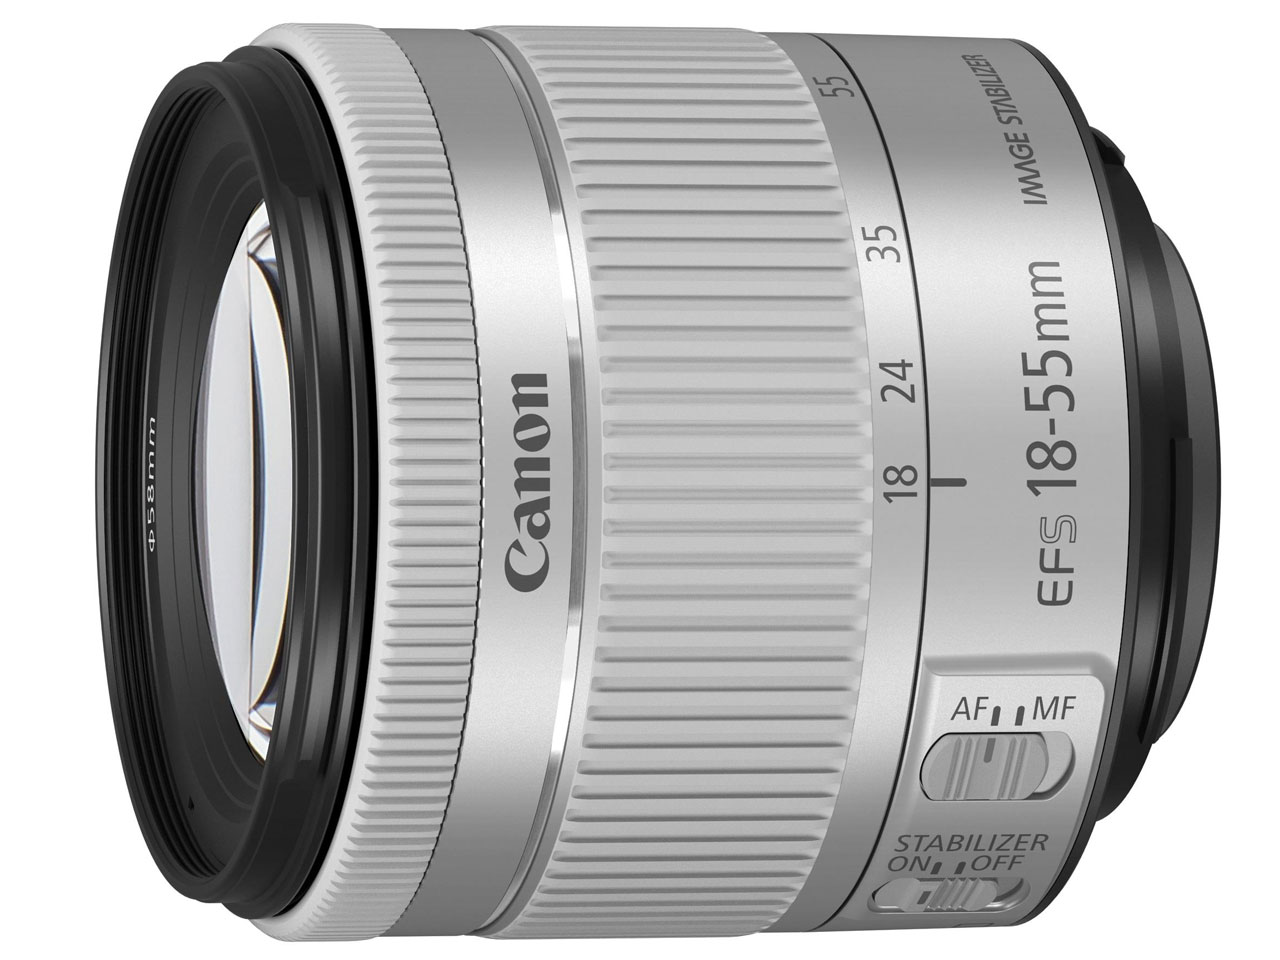 価格.com - 『付属品 レンズ』 EOS Kiss X9 EF-S18-55 IS STM レンズキット [ホワイト] の製品画像